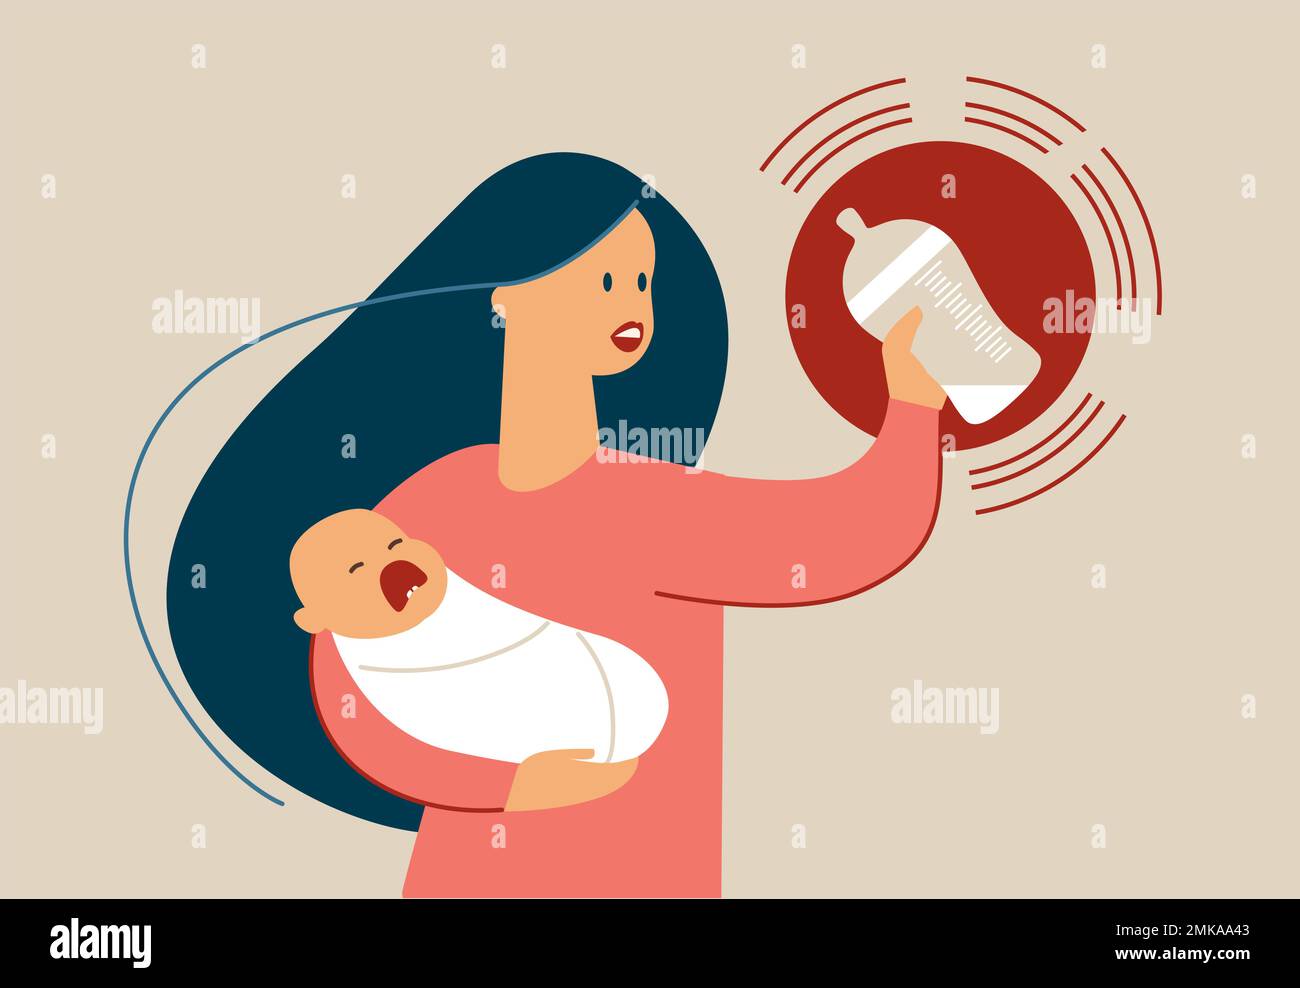 Mutter mit hungrigem weinendem Baby an den Händen, das eine Flasche mit Milchnahrung auf dem Boden hält. Babymilch-Krisenkonzept. Flacher Vektor Stock Vektor